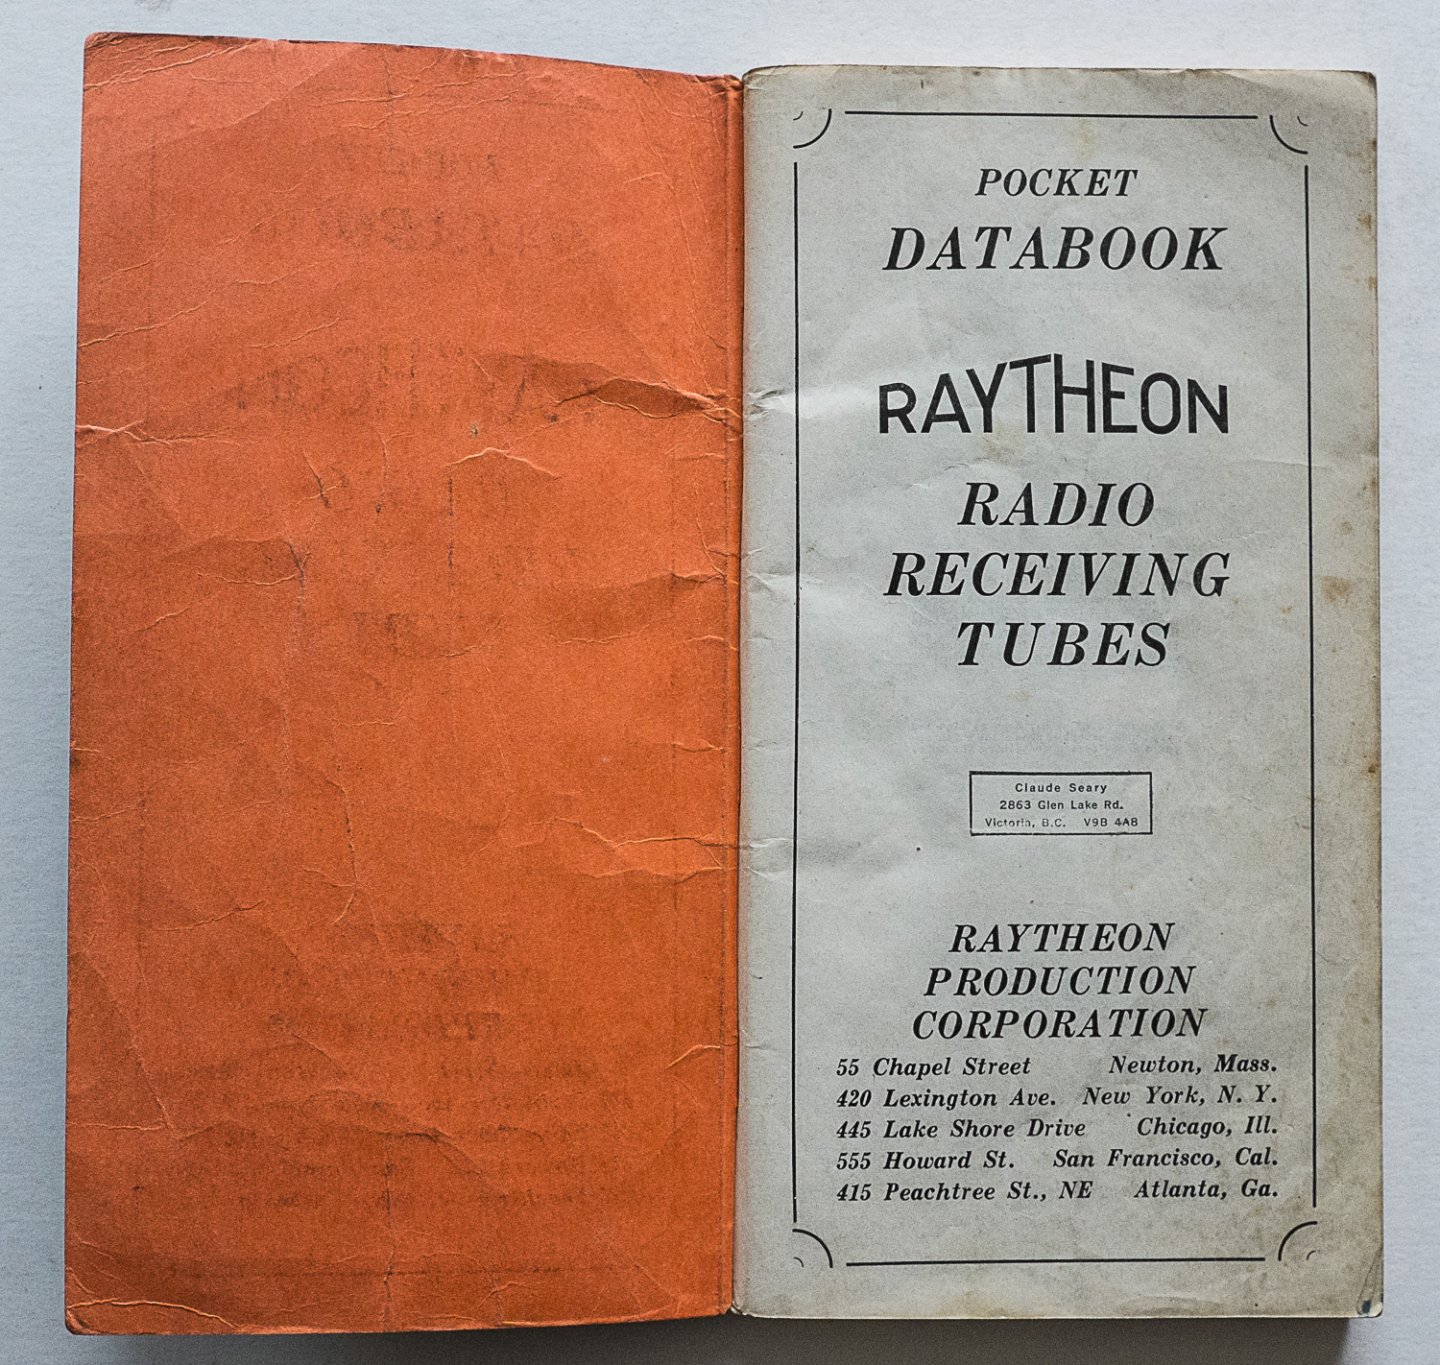 Raytheon Electron tubes - Databook Raytheon Radio receiving tubes